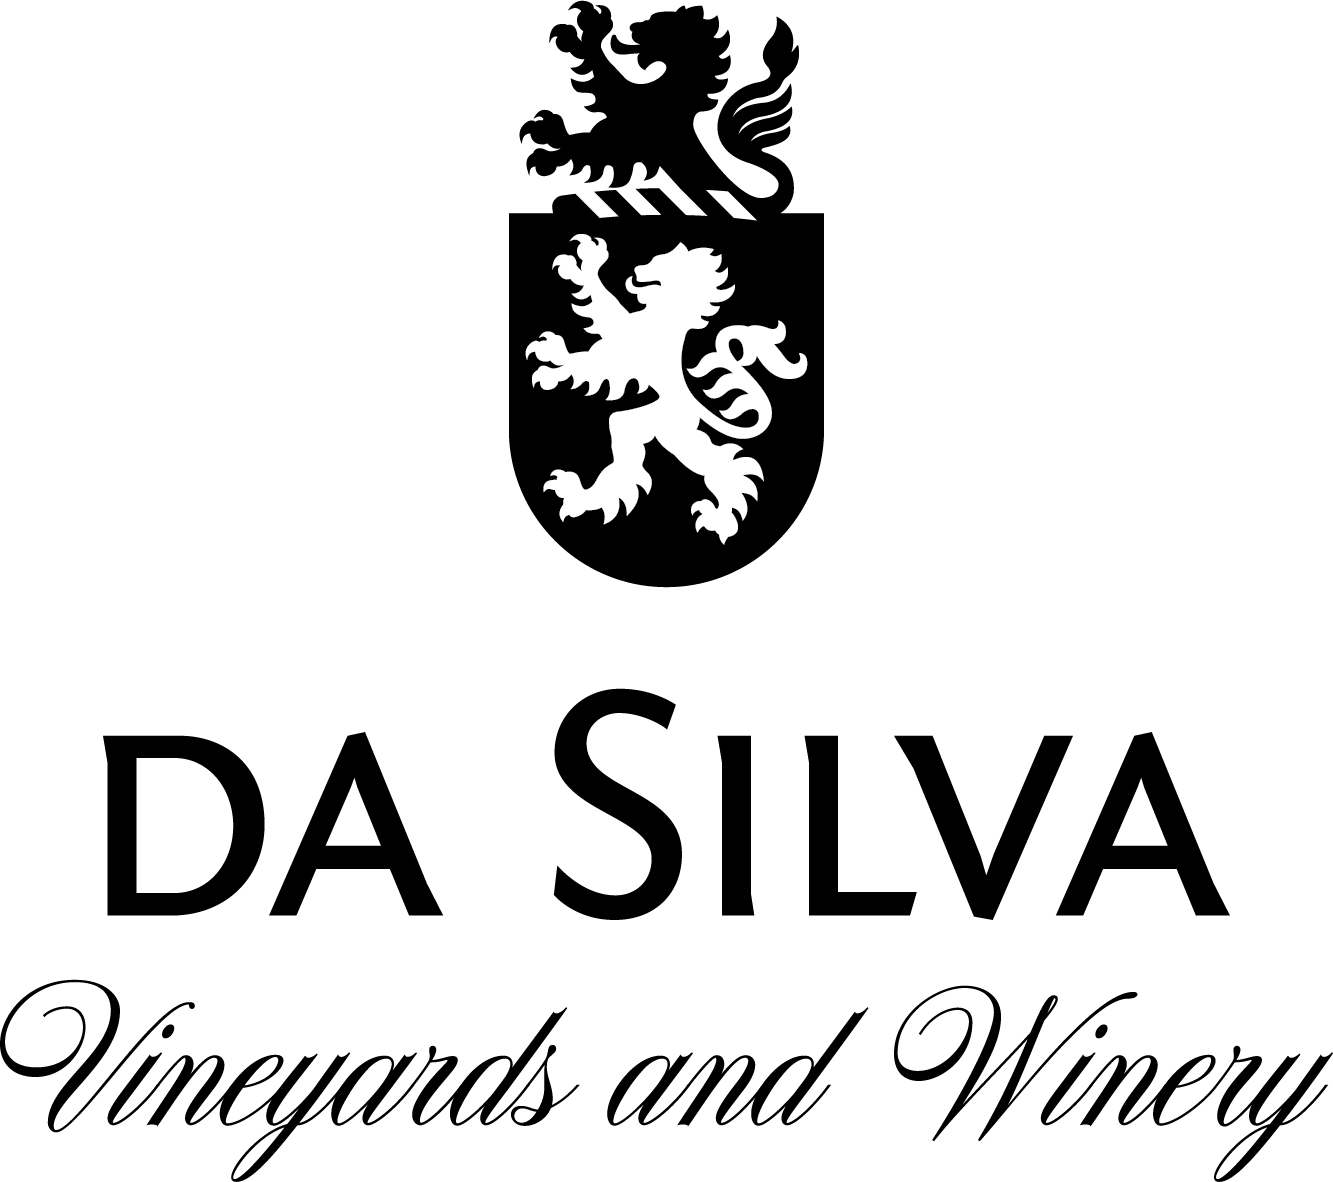 da silva vineyards and winery